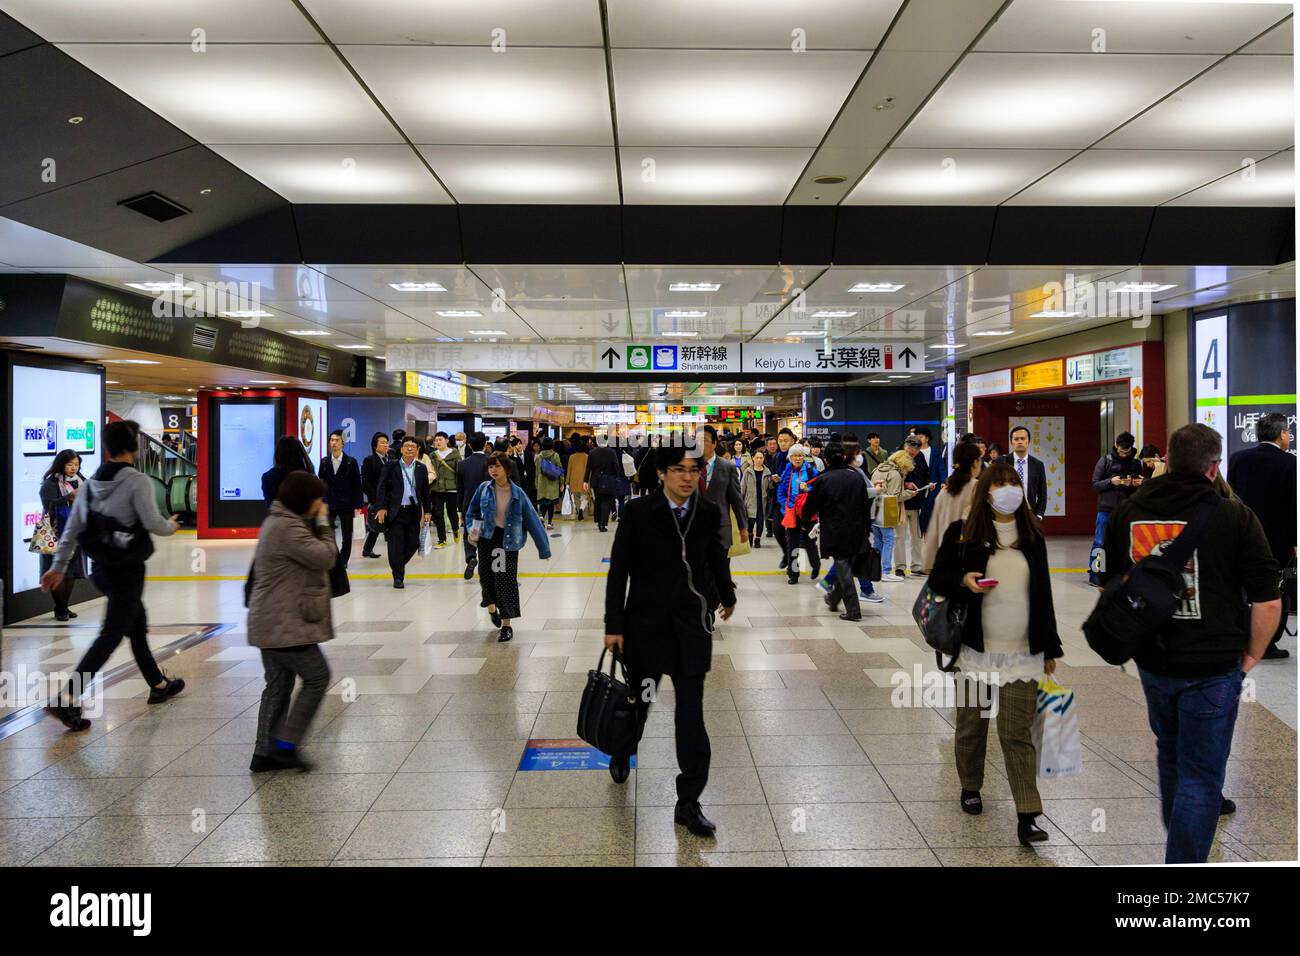 All'interno della stazione di Tokyo, concourse affollata da pendolari che camminano fino alle porte dello shinkansen e al binario 4 per il loop, la linea Yamanote. Foto Stock